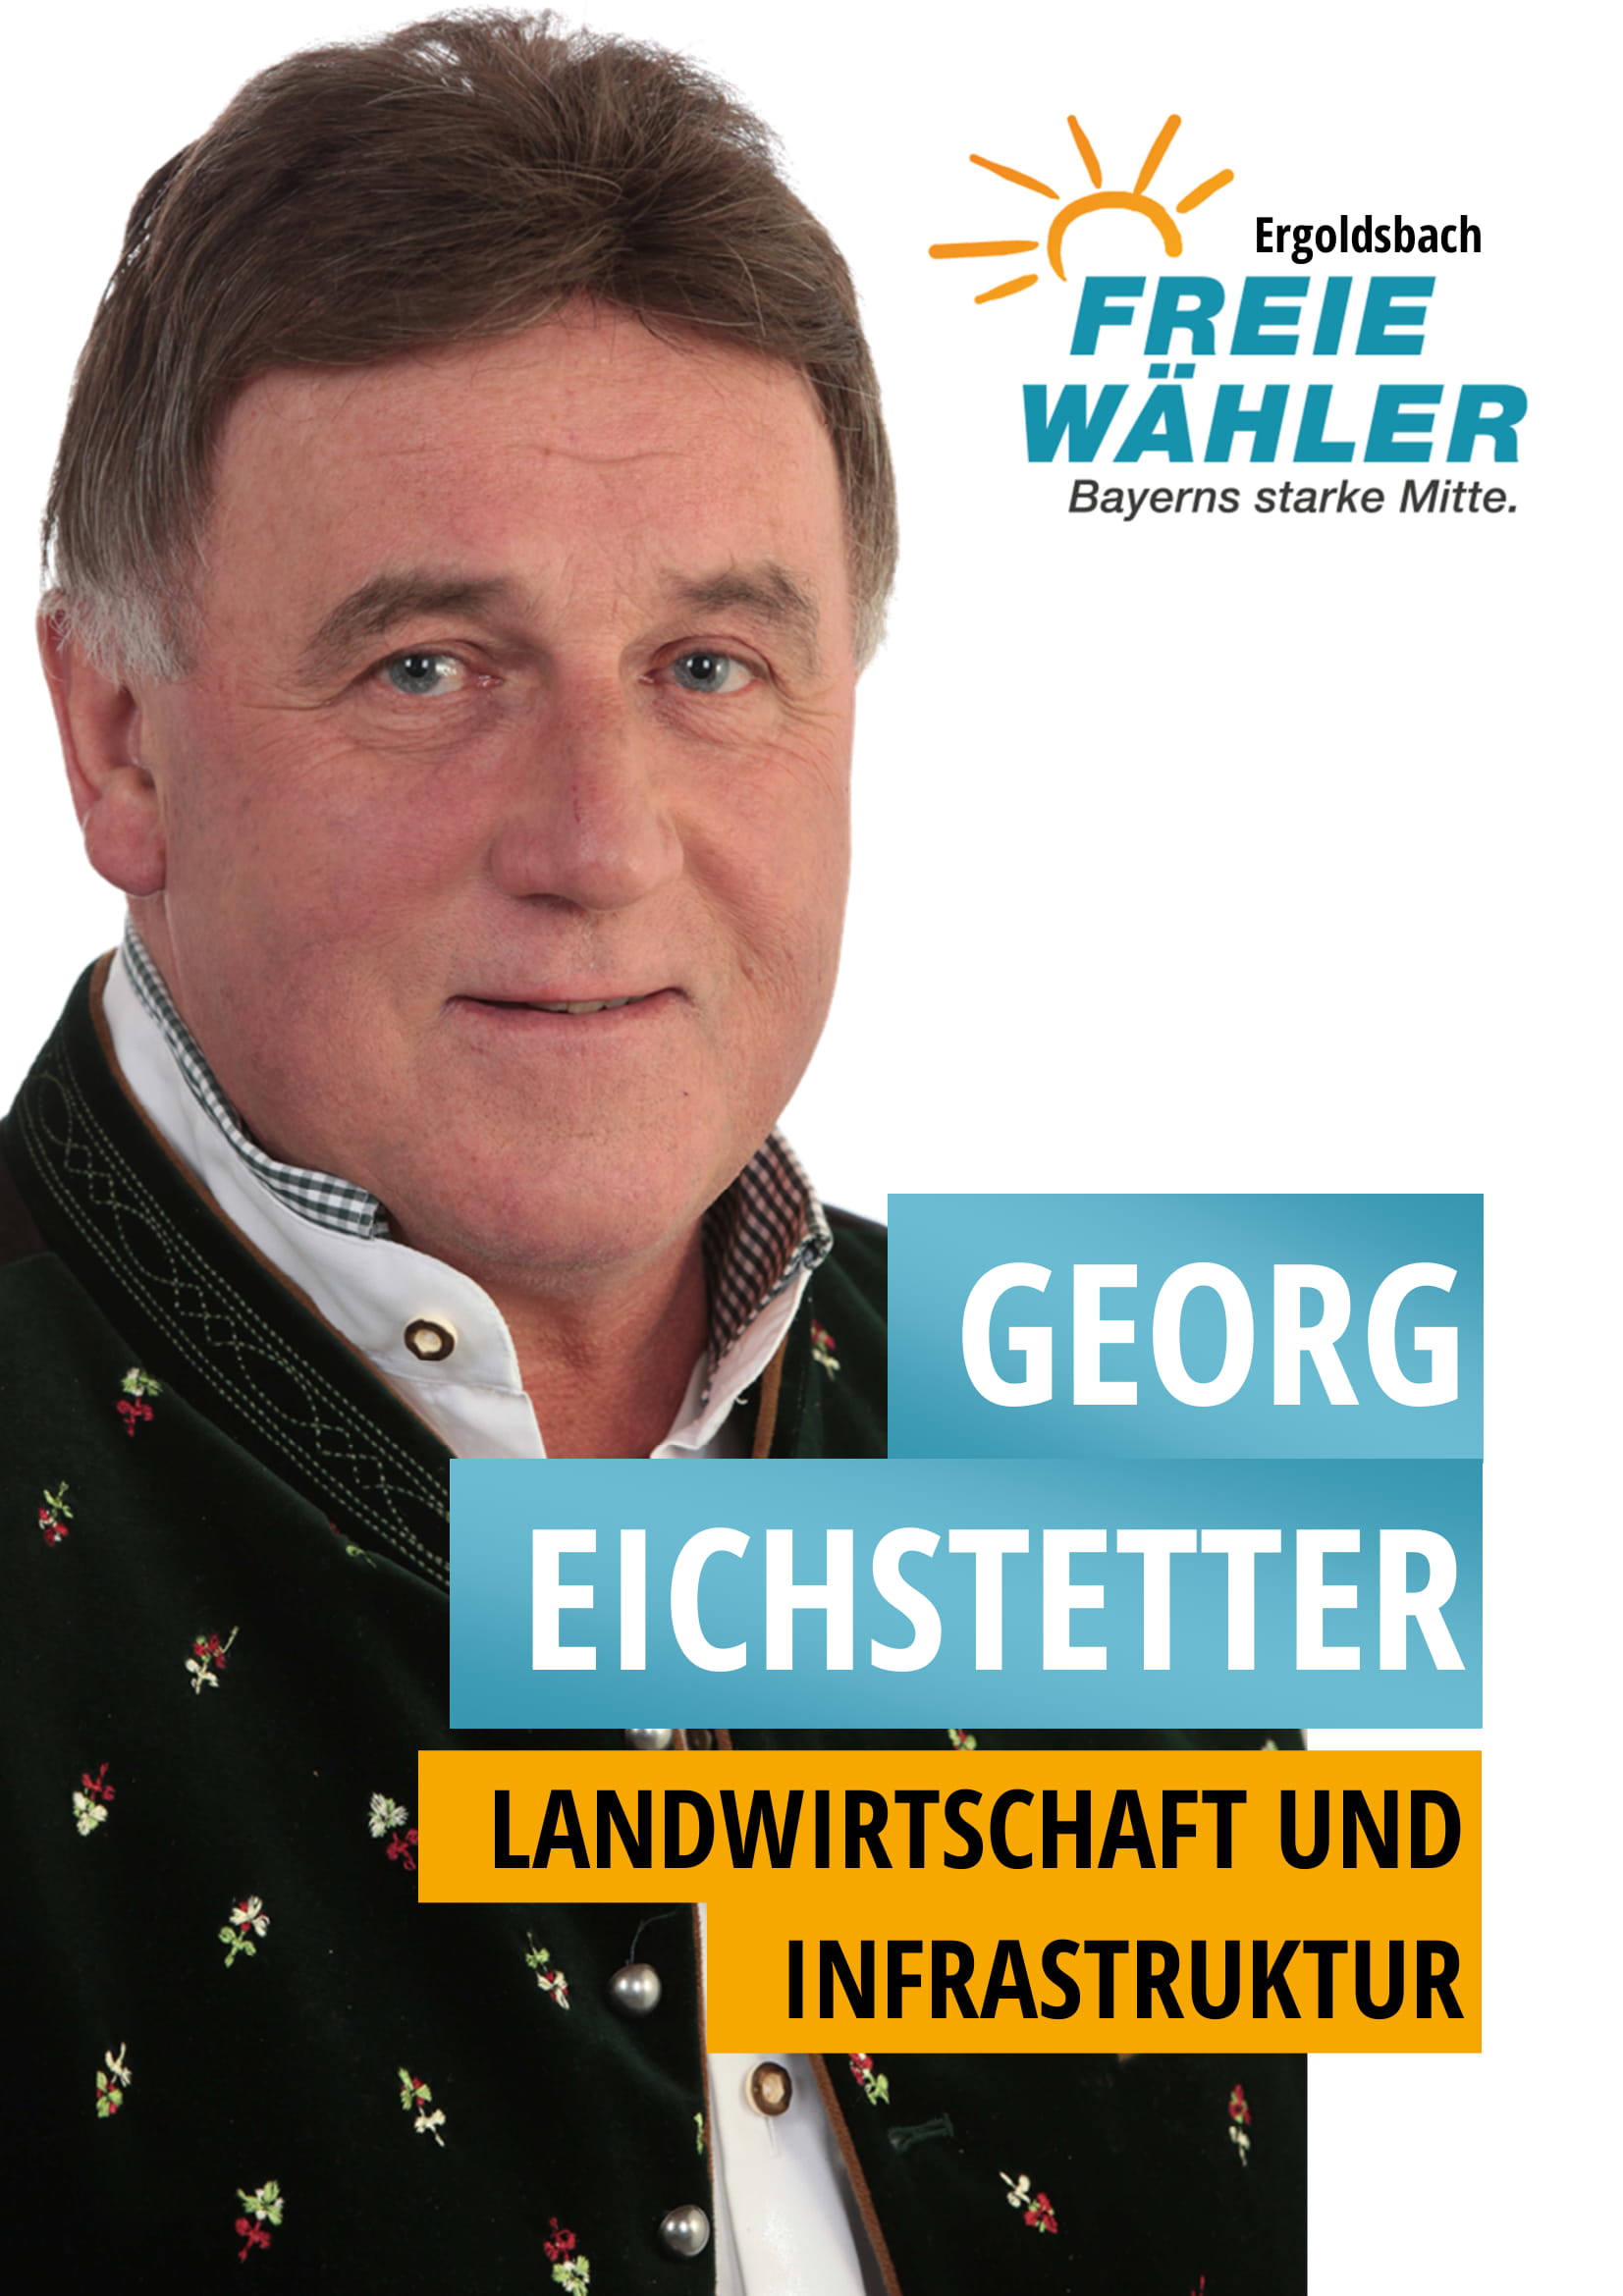 Georg Eichstetter